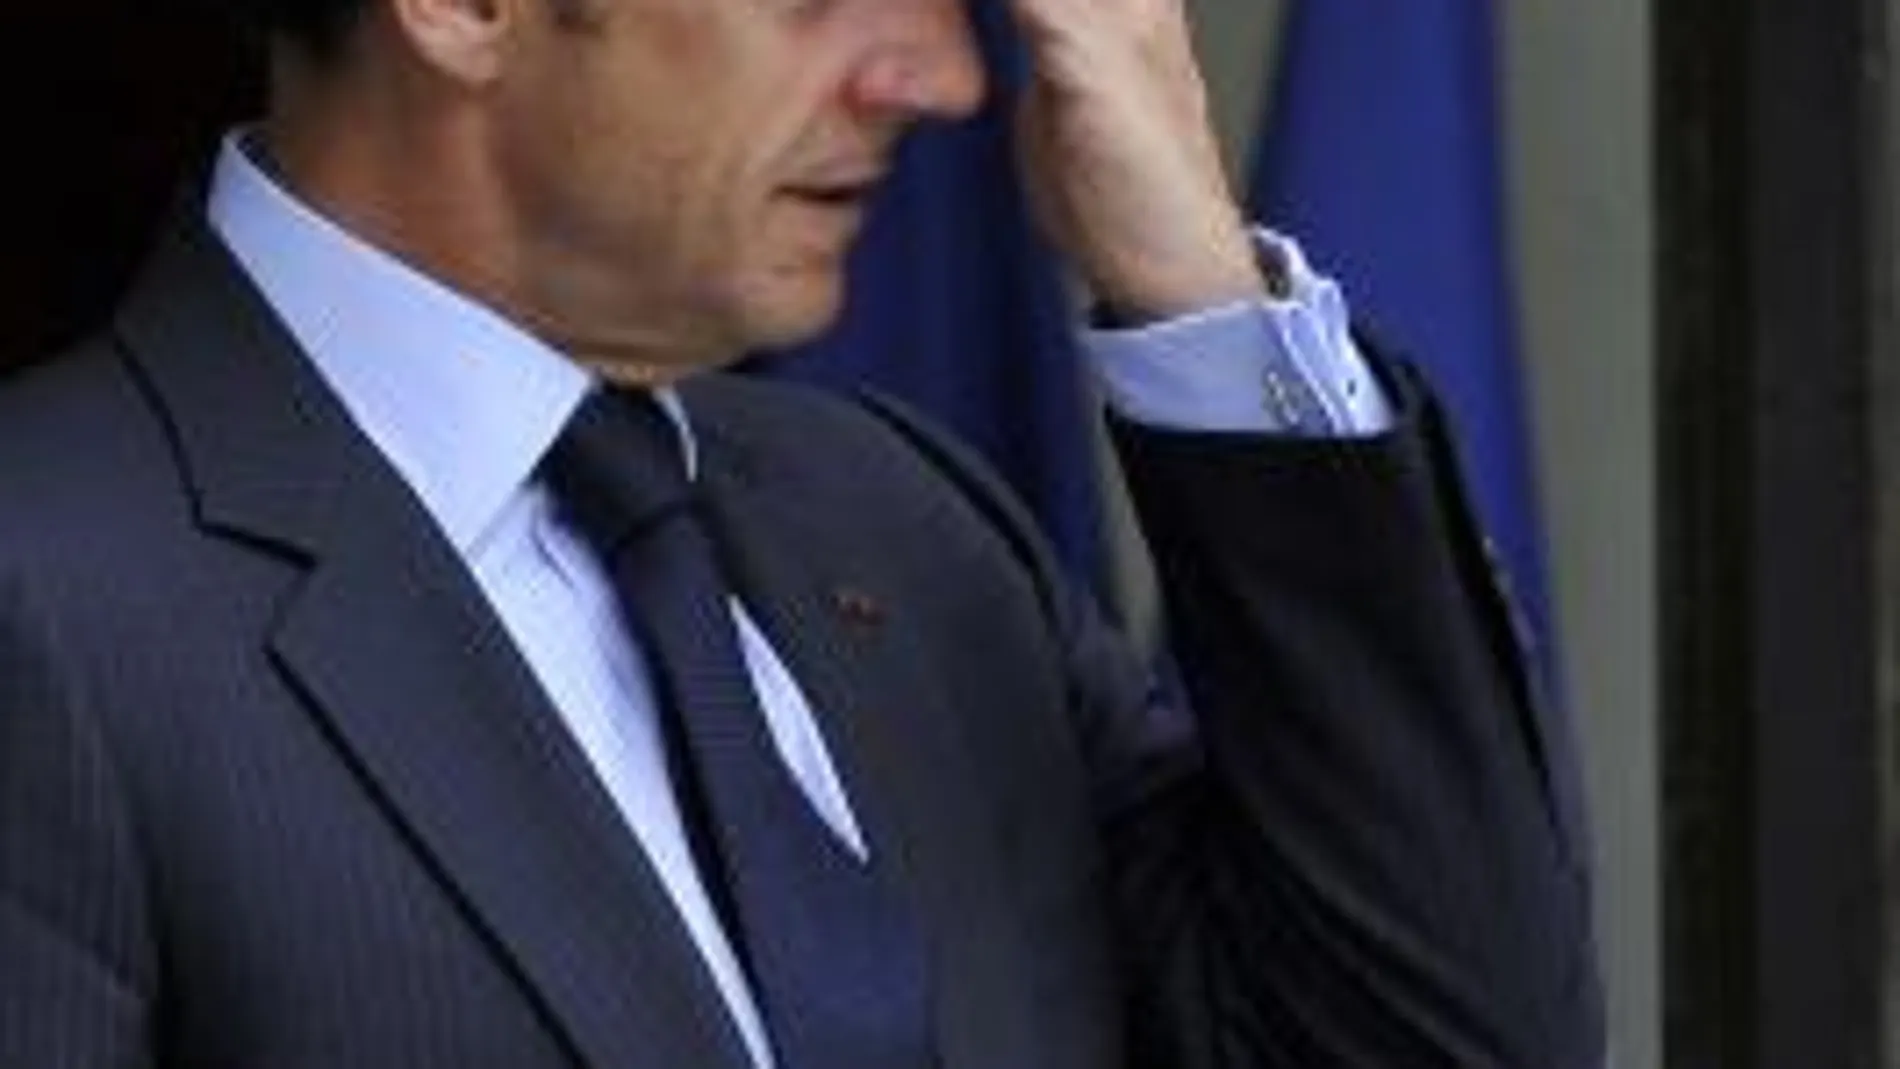 Sarkozy permanecerá en observación en el hospital hasta mañana por la mañana